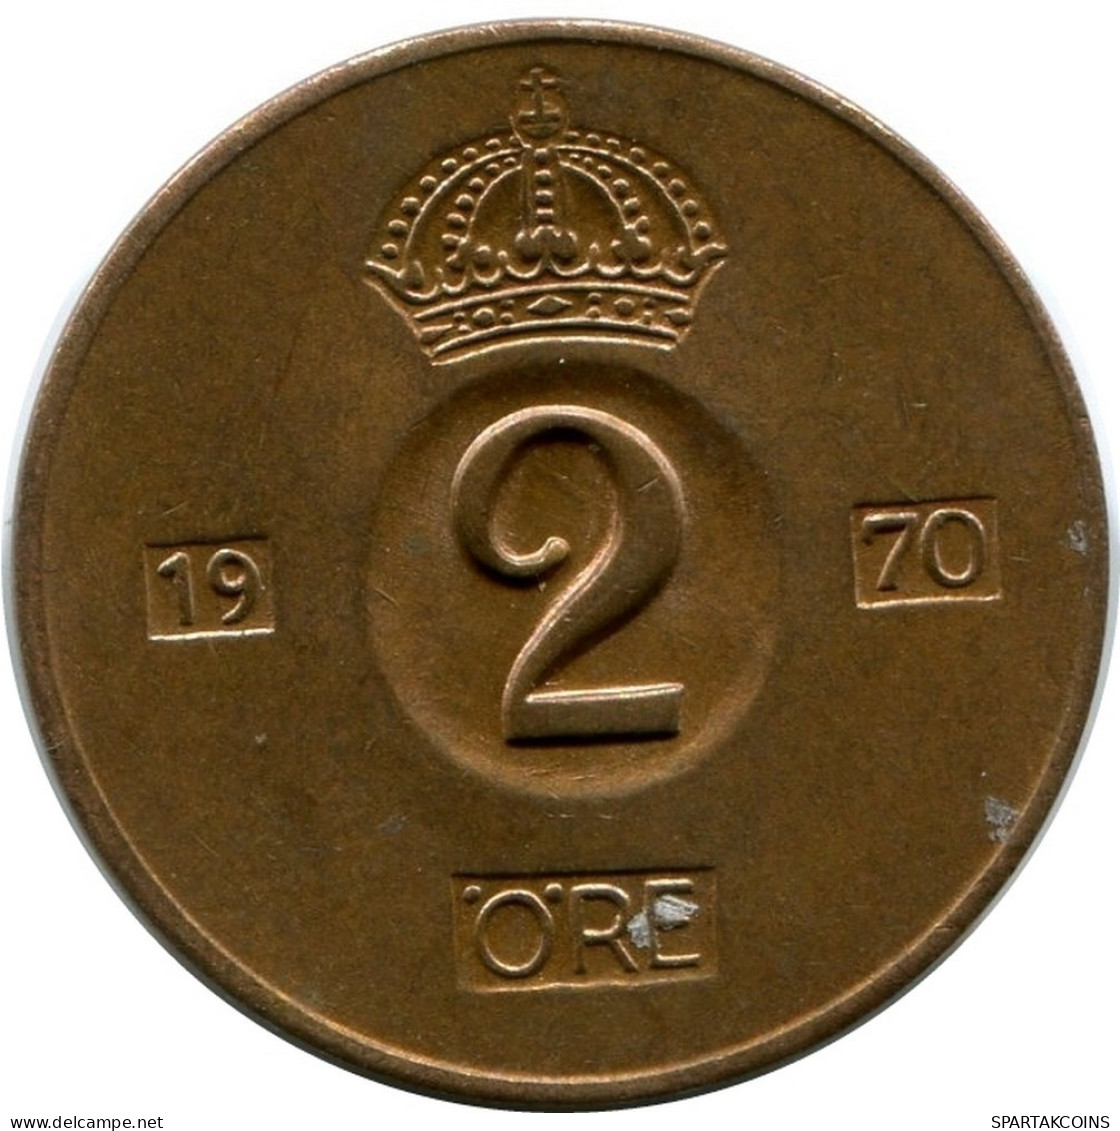 2 ORE 1970 SWEDEN UNC Coin #M10356.U.A - Suède